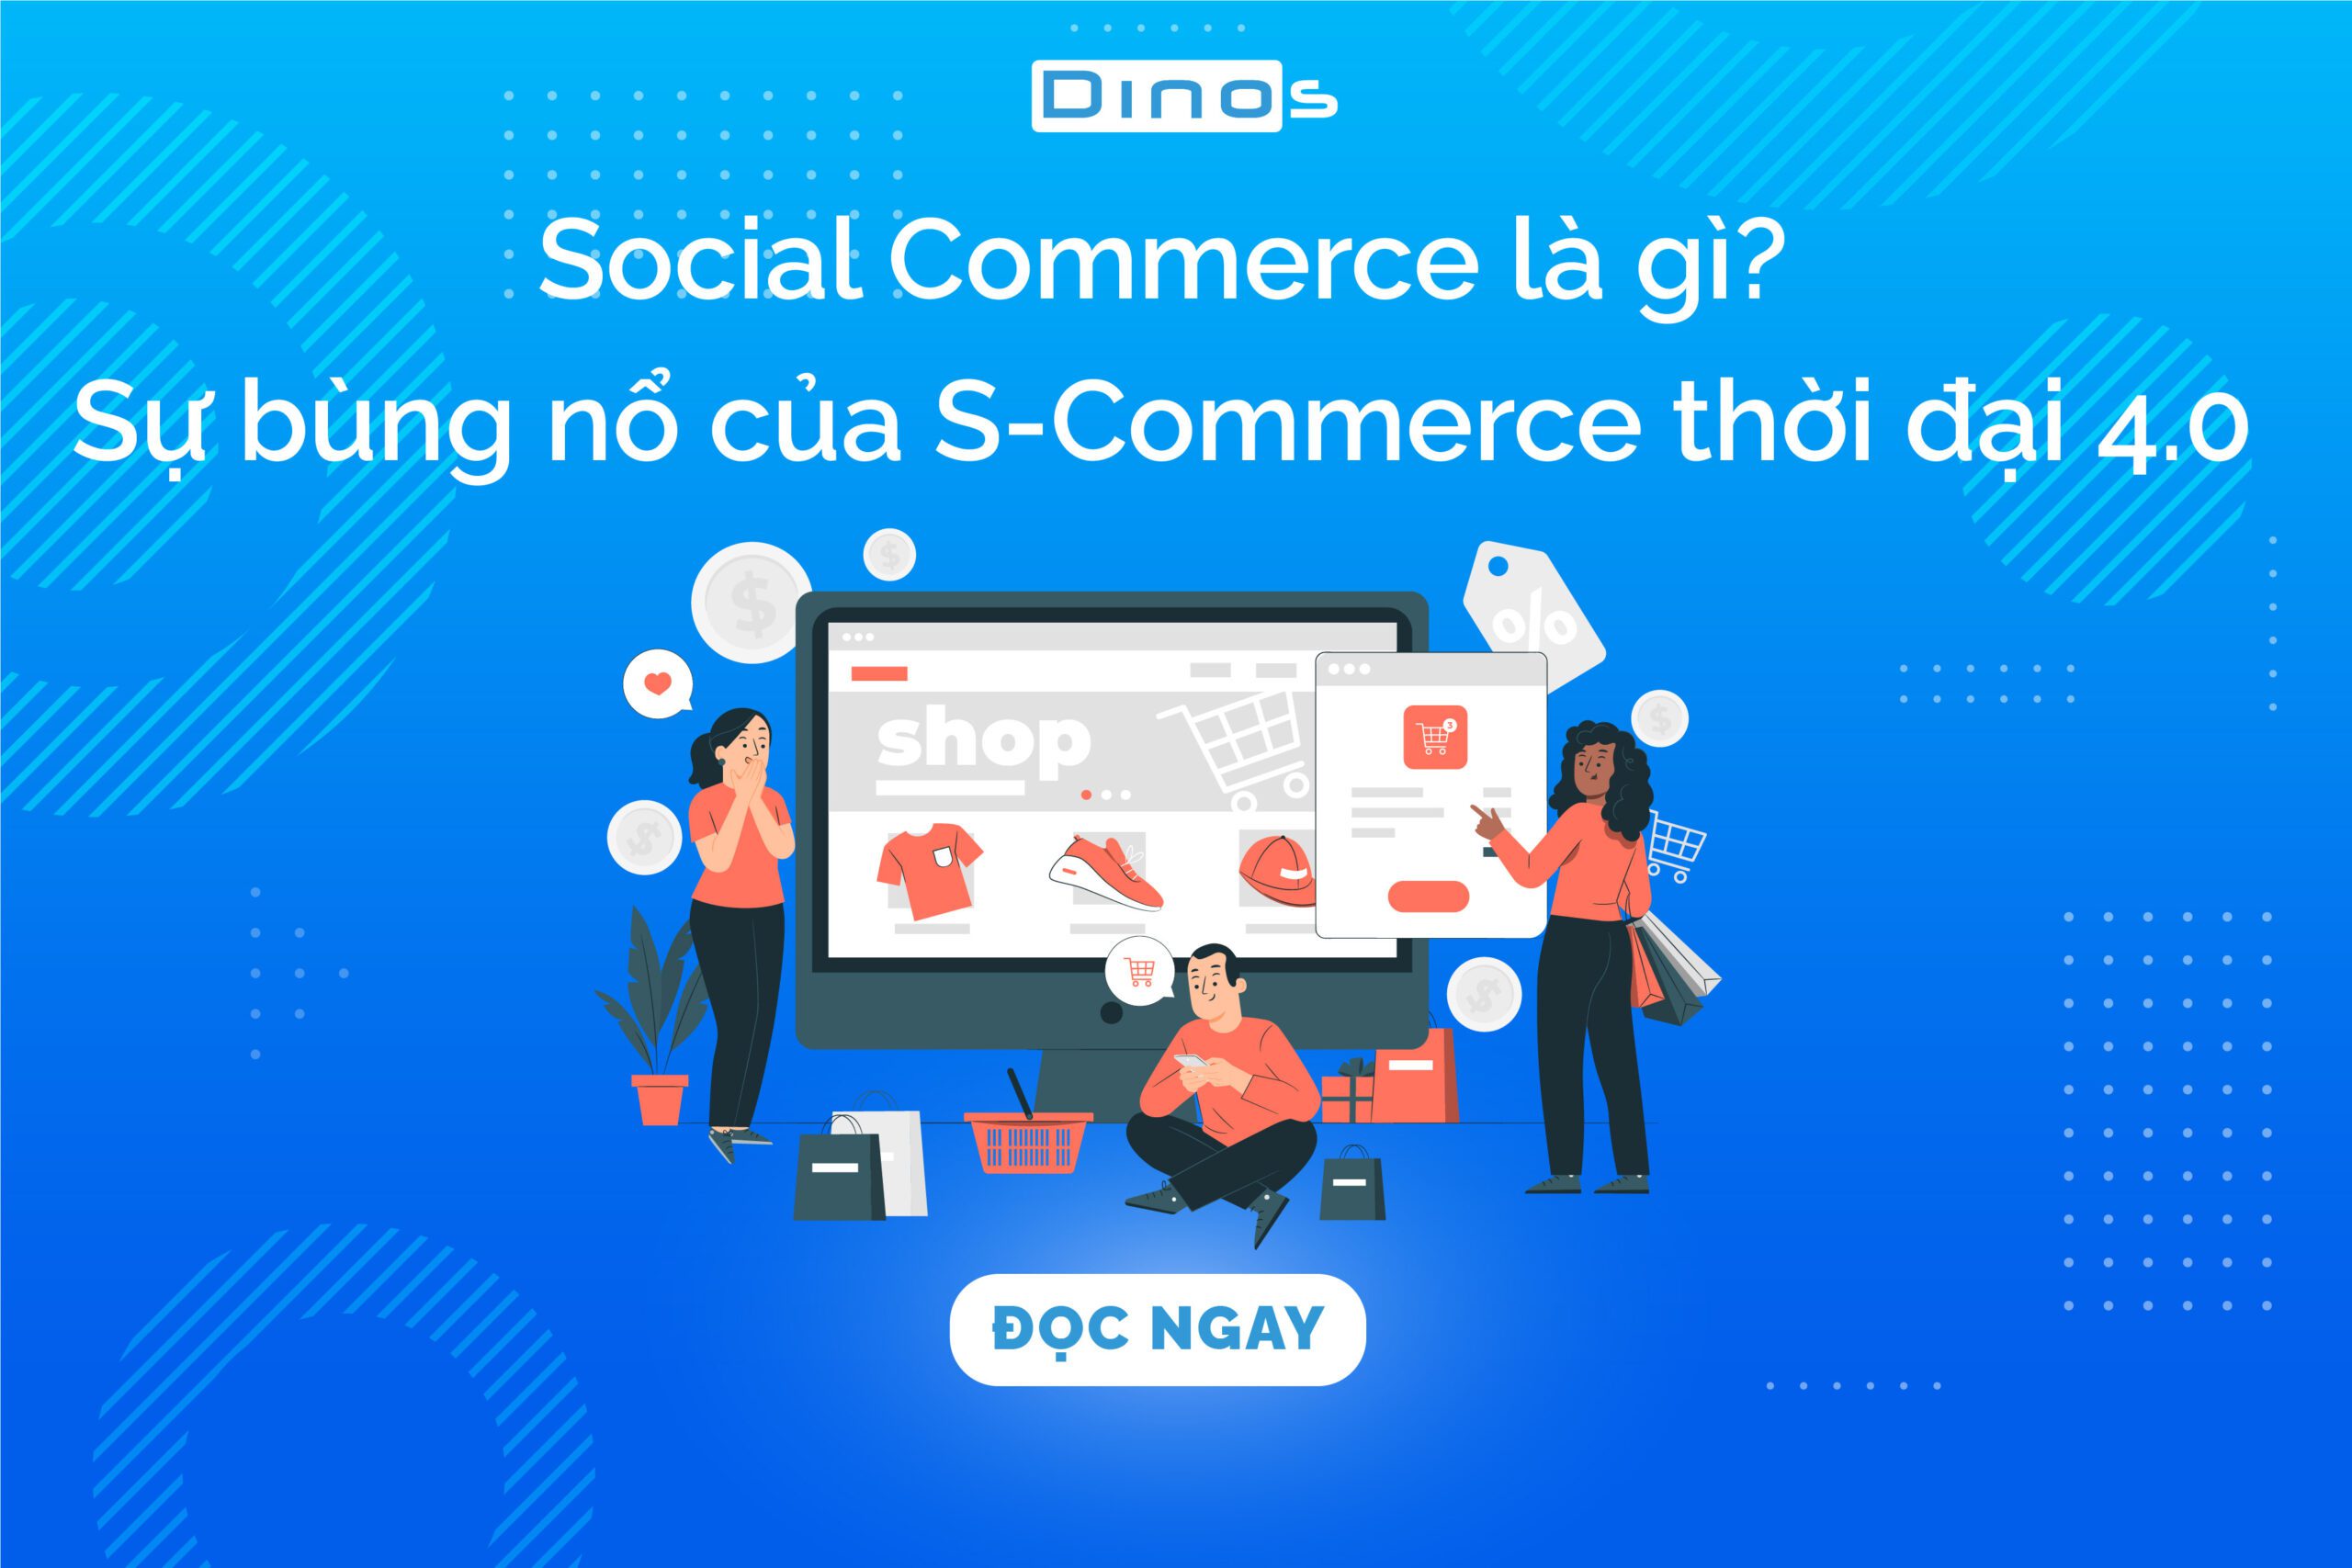 Social Commerce là gì? Sự bùng nổ của S-Commerce trong thời đại 4.0 